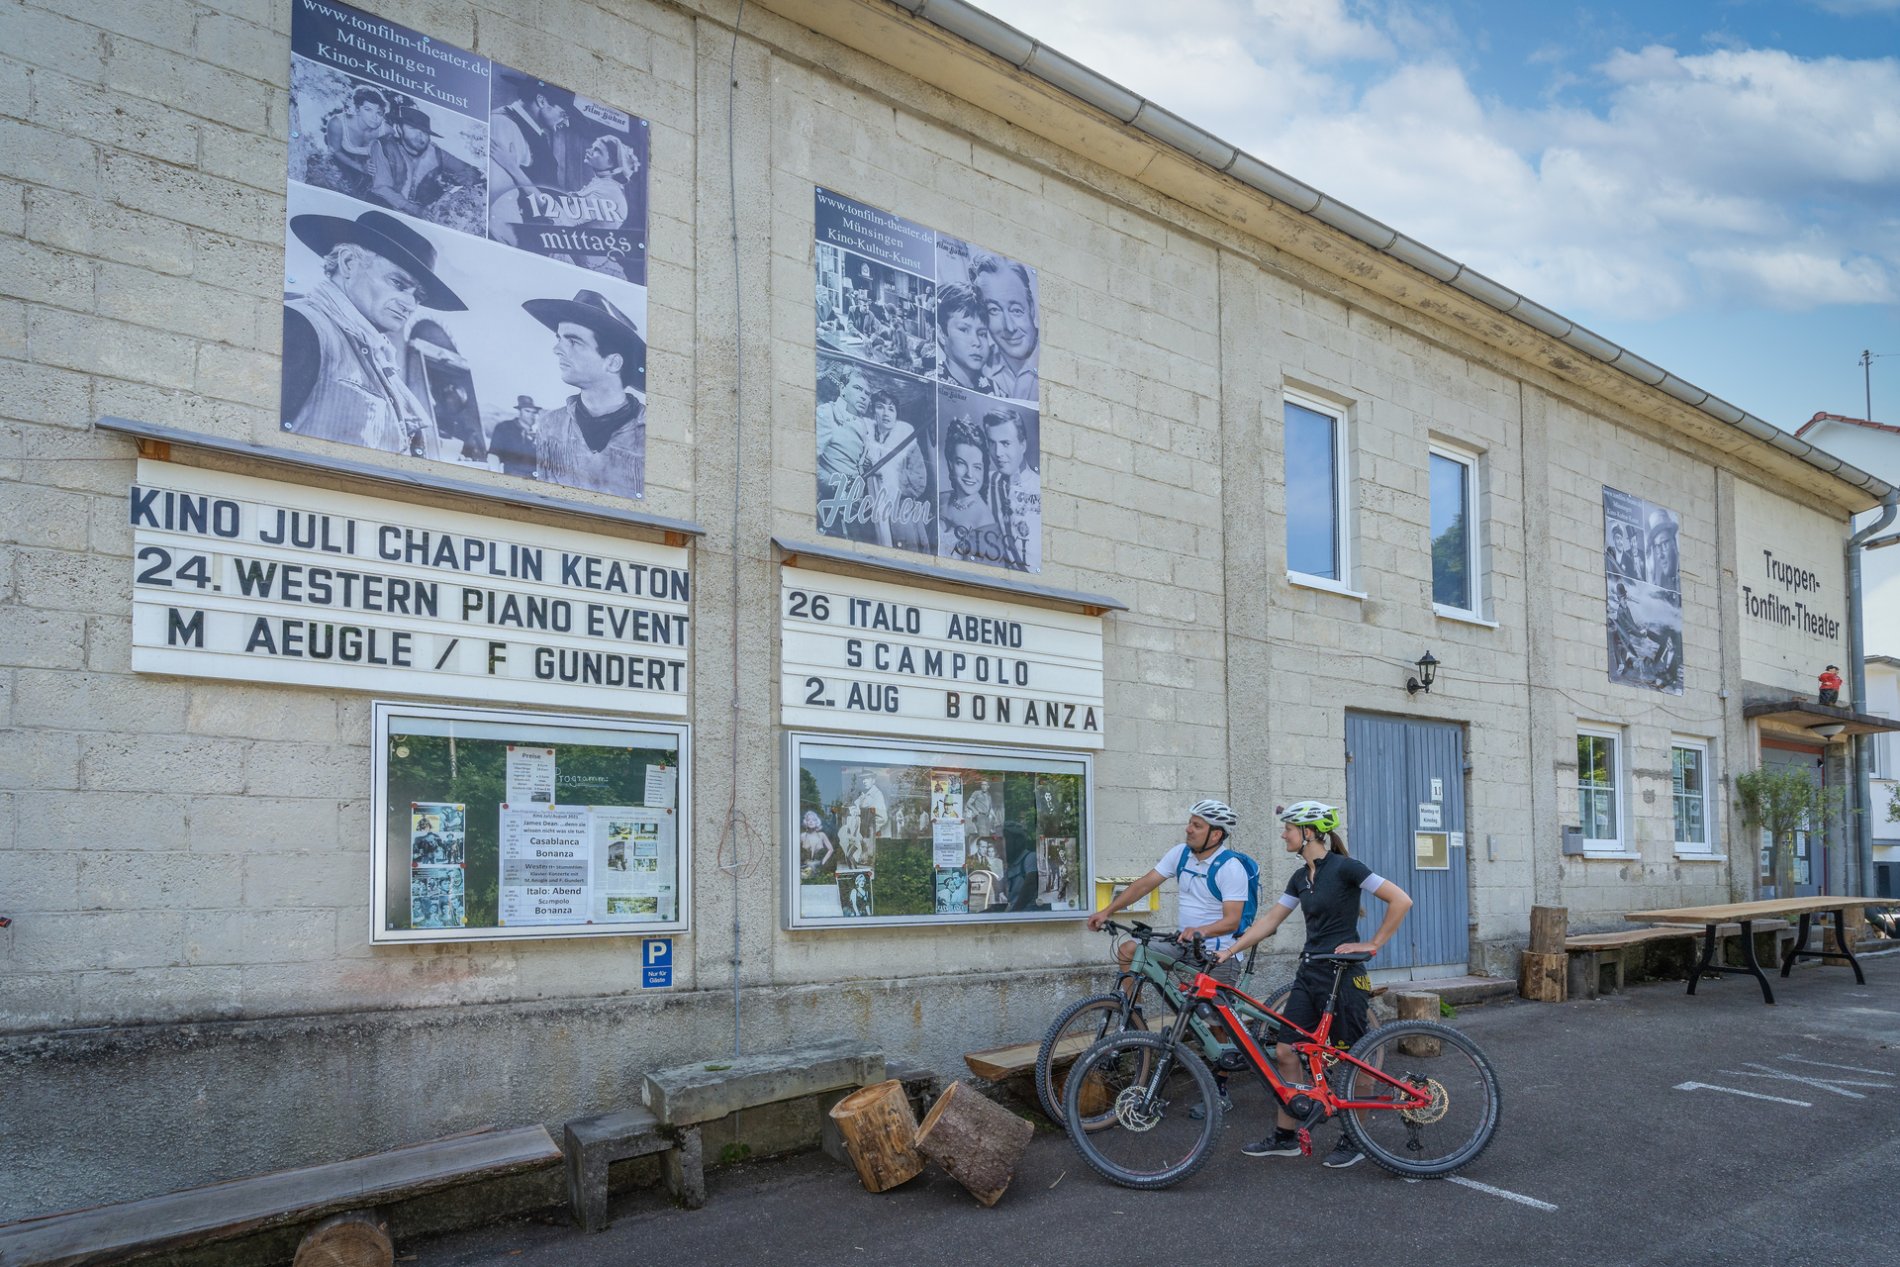 Zwei Radfahrer*innen stehen vor einem grauen Gebäude mit der Aufschrift Truppen- und Tonfilm-Theater. An der Wand sind mehrere Plakate in schwarz-weiß mit Filmklassikern. Sie betrachten die Tafel und den Schaukasten mit dem Programm.